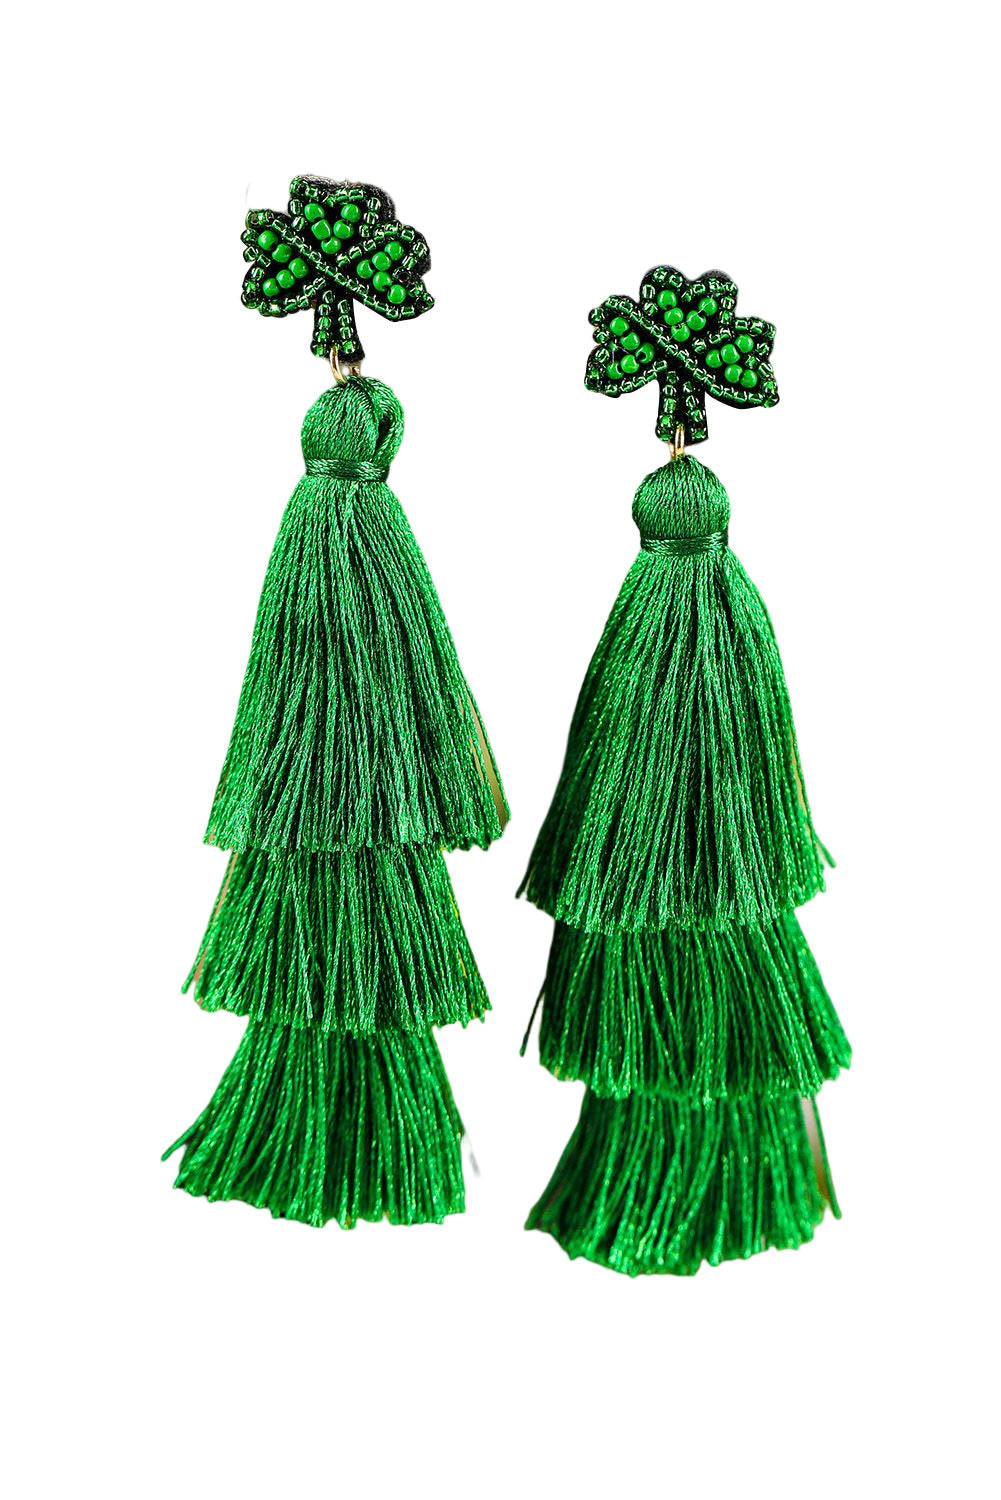 BH012480-9, Green St. Patricks Day Beaded Layered Tassel Earrings for Women